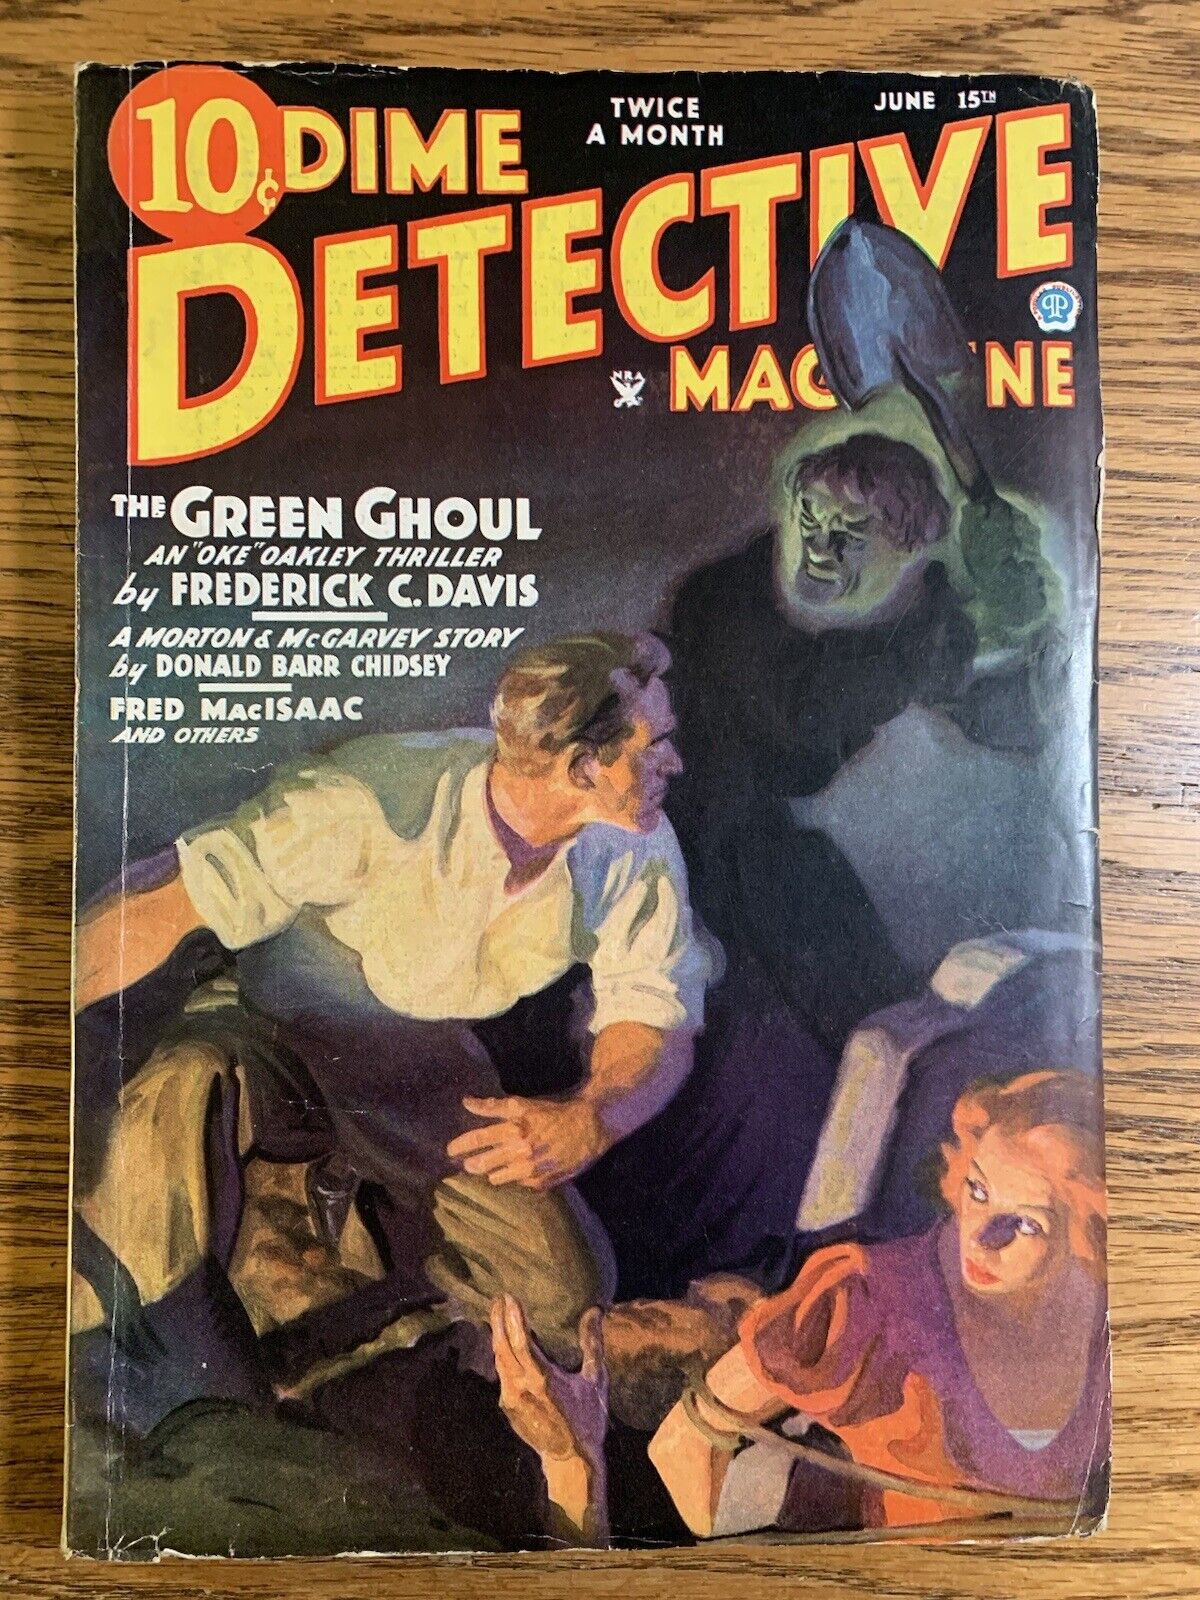 Dime Detective Magazine June 1935 Classic Cover Vintage Pulp Magazine HG